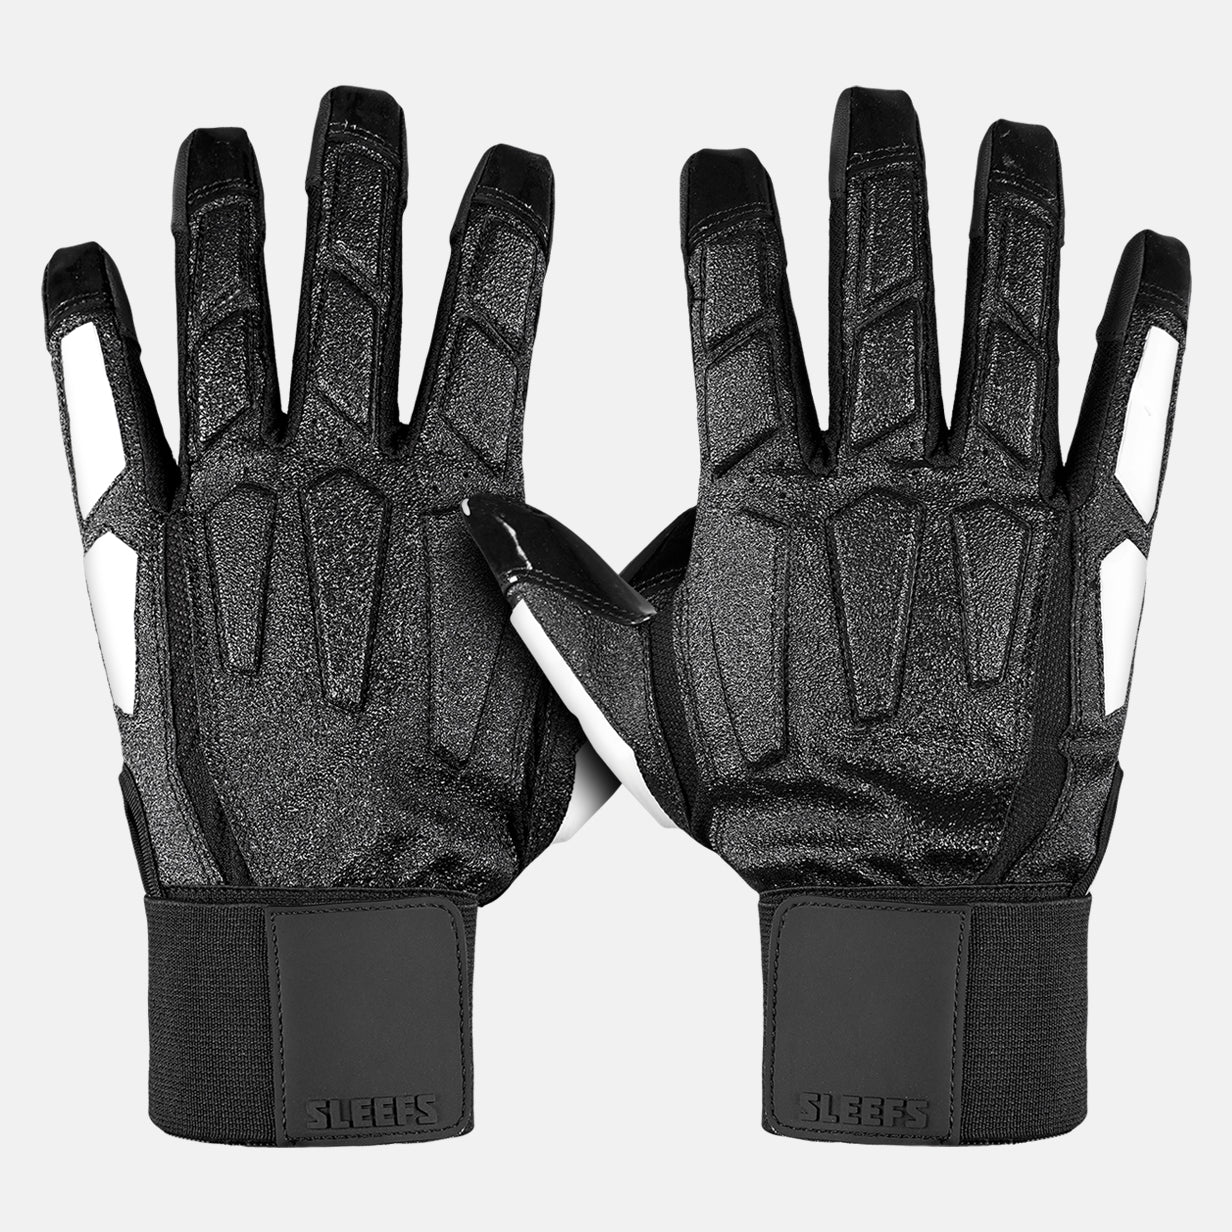 Basic Black Football Lineman Gloves